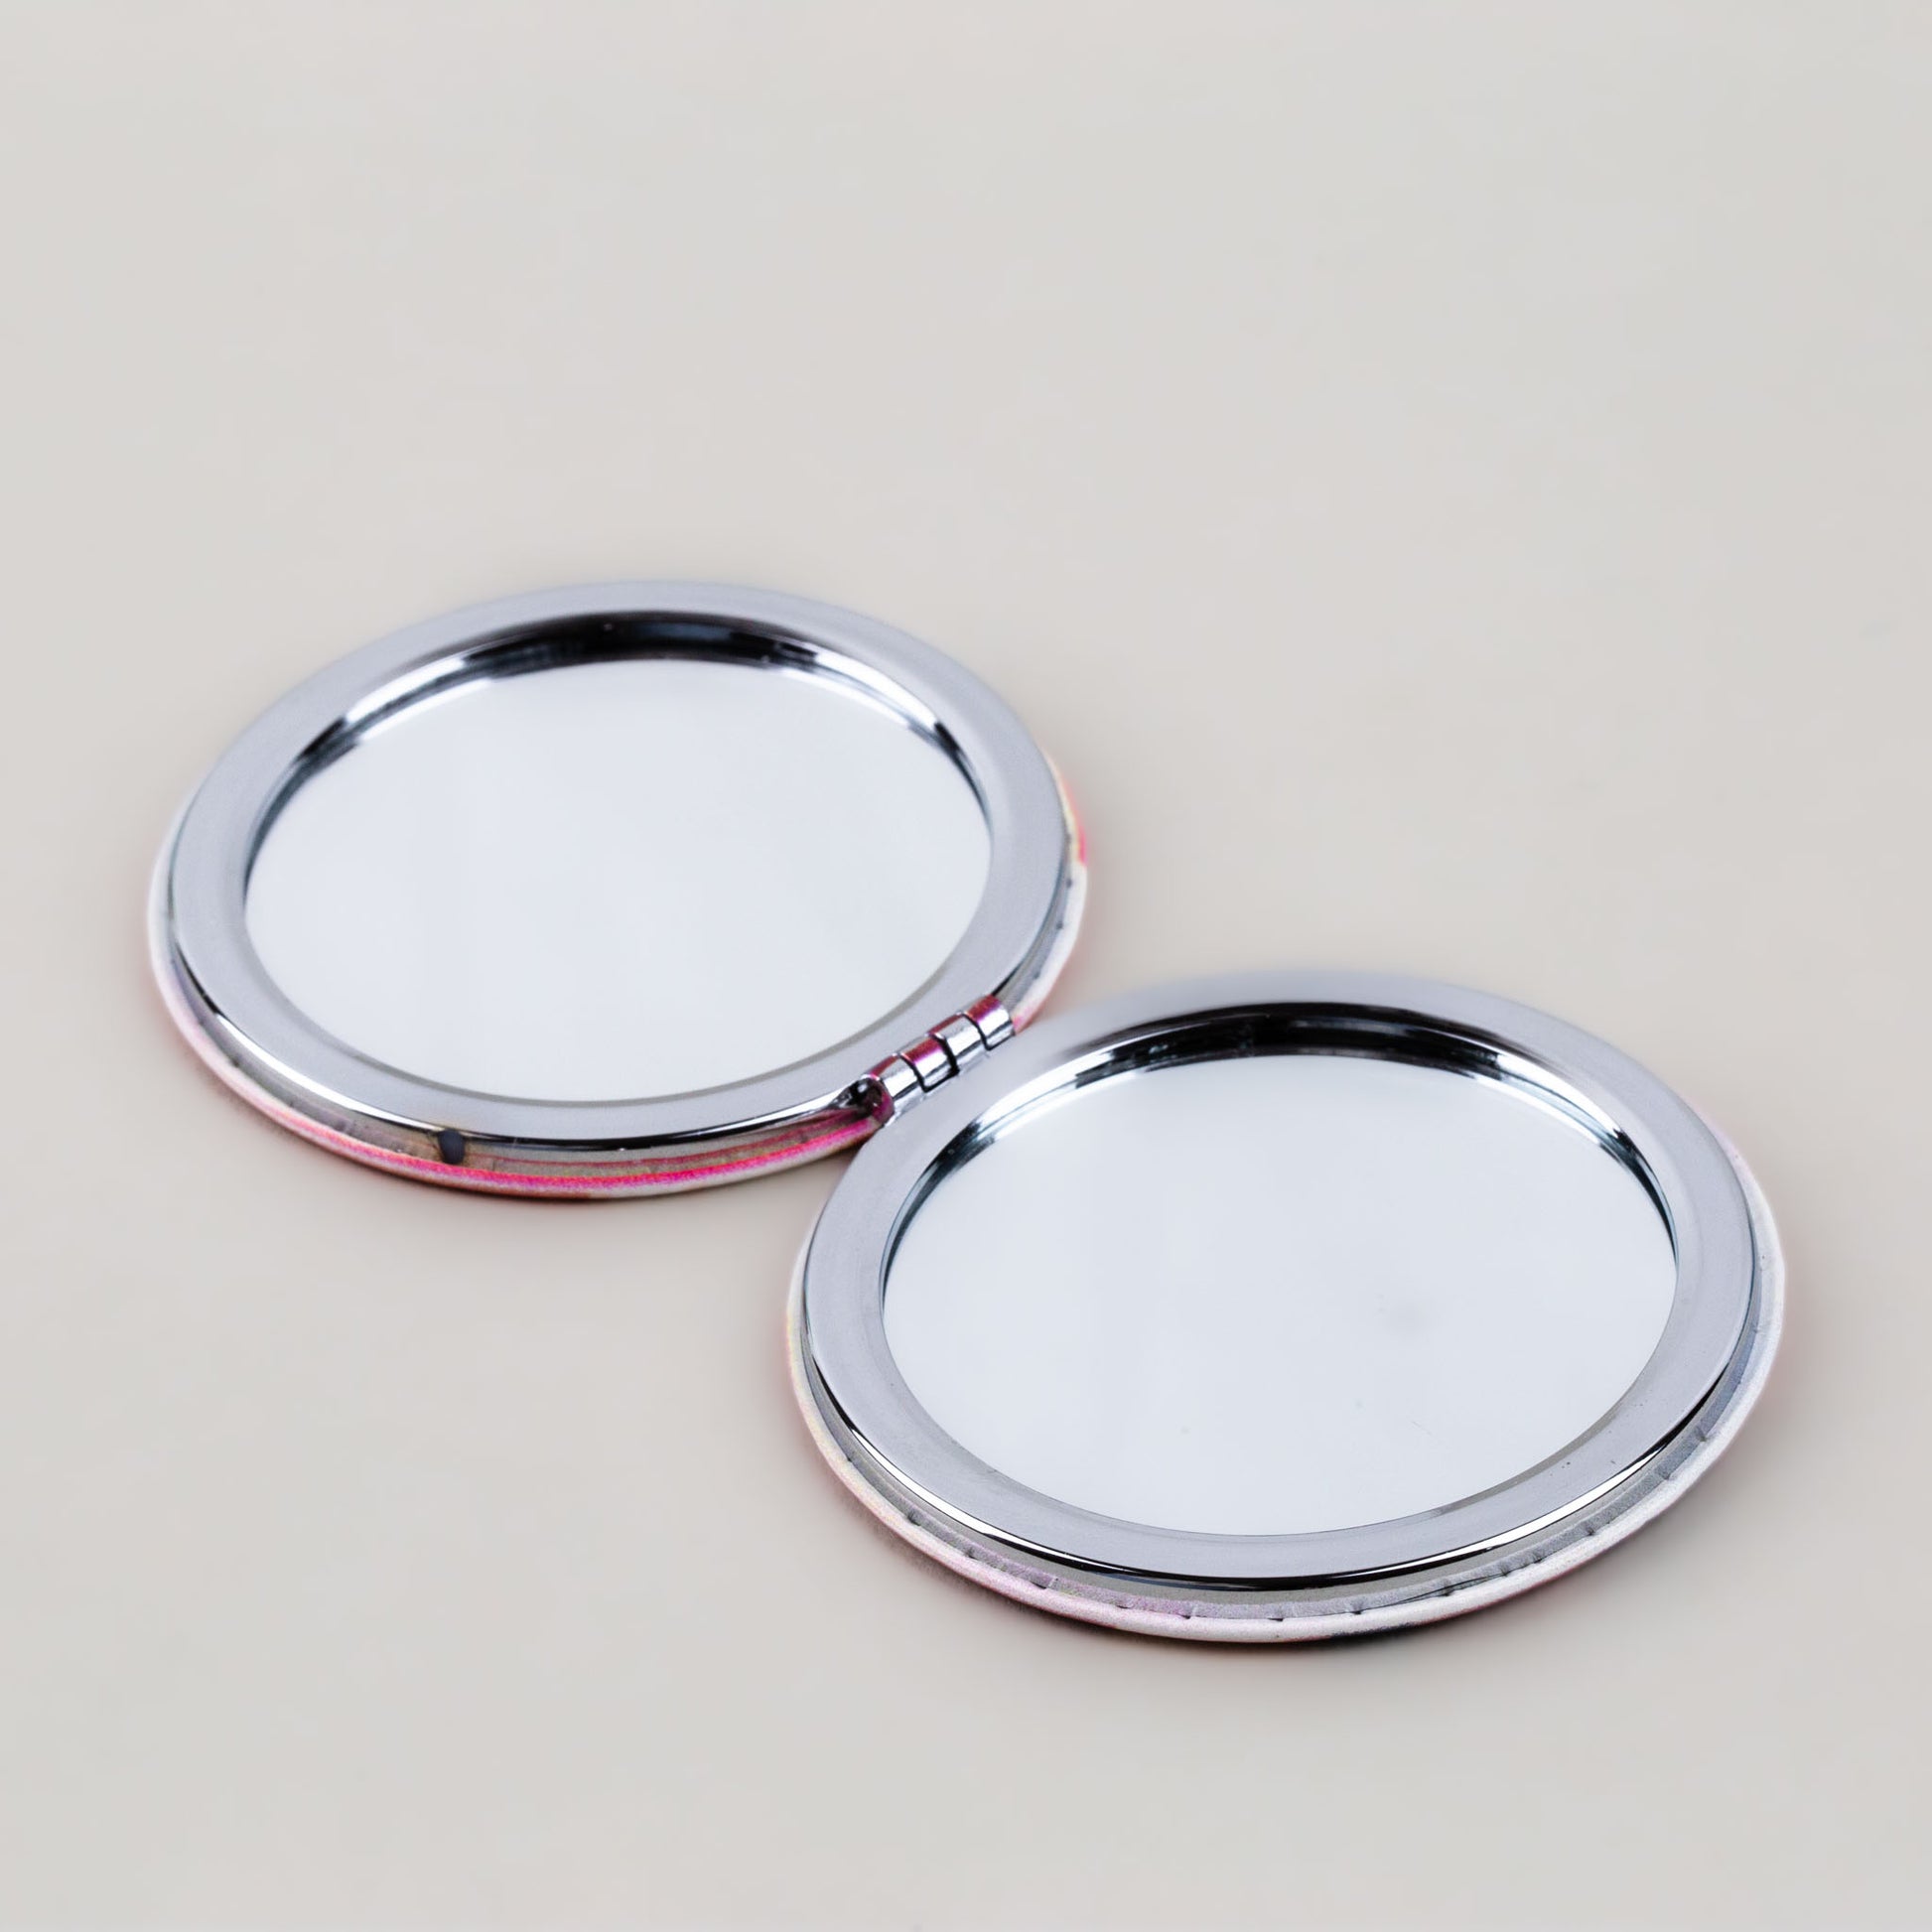 Oglindă de poșetă, formă rotundă cu 2 părți, model shopping fun - Duo